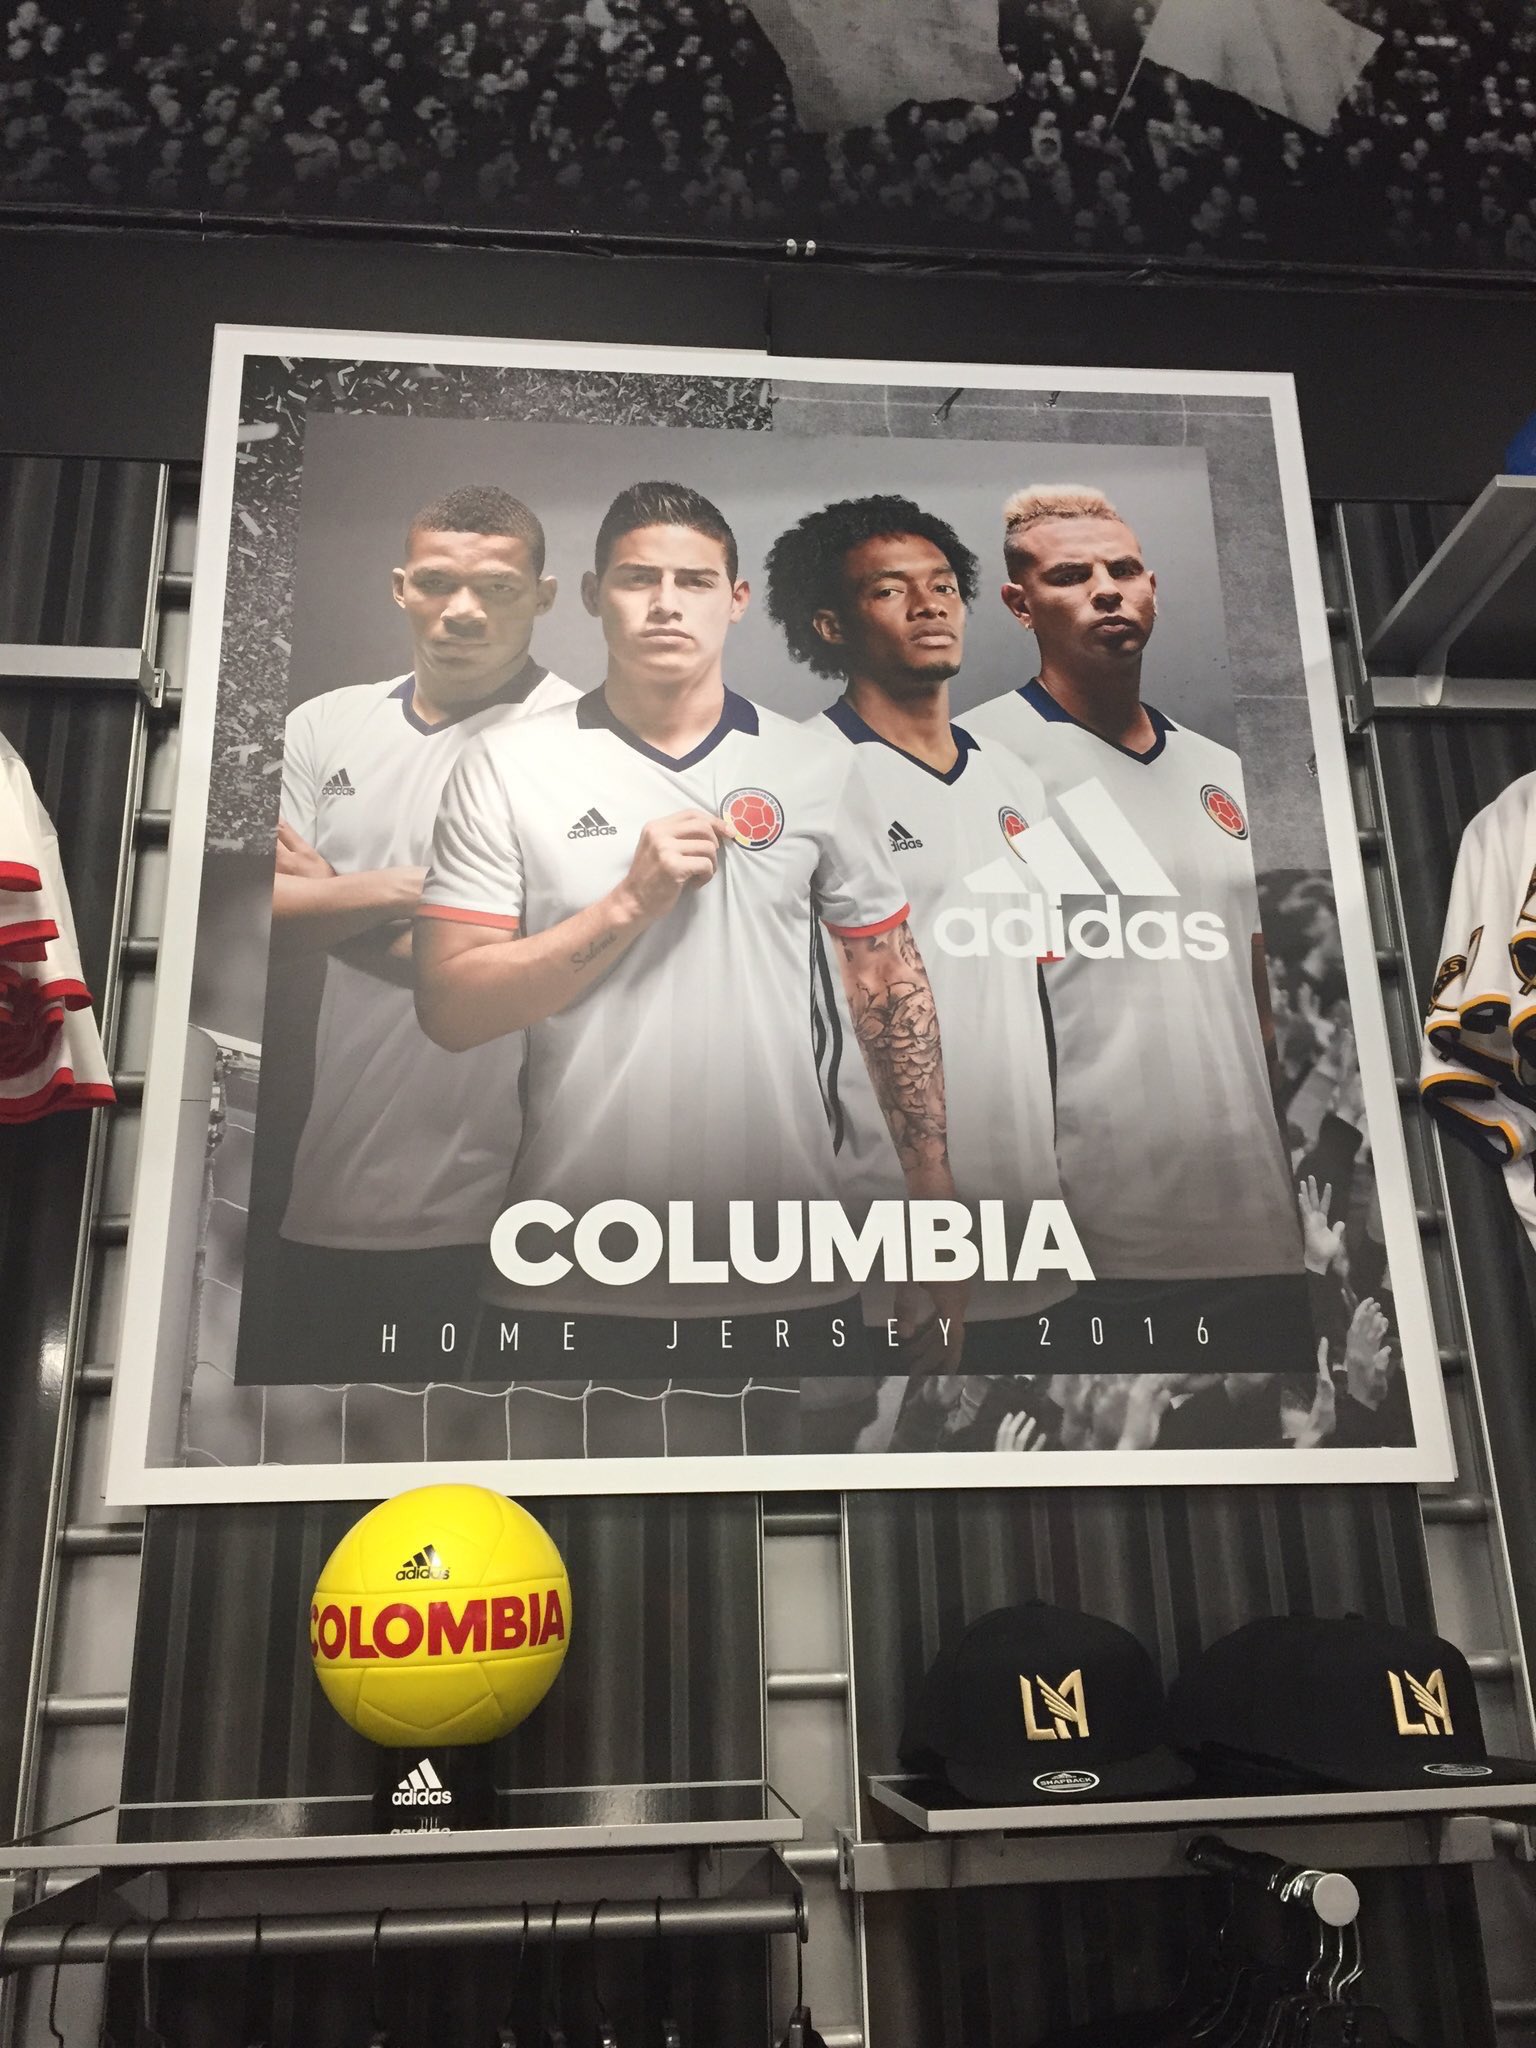 Céntrico contraste Mal uso Adidas ofende a toda Colombia con su última campaña